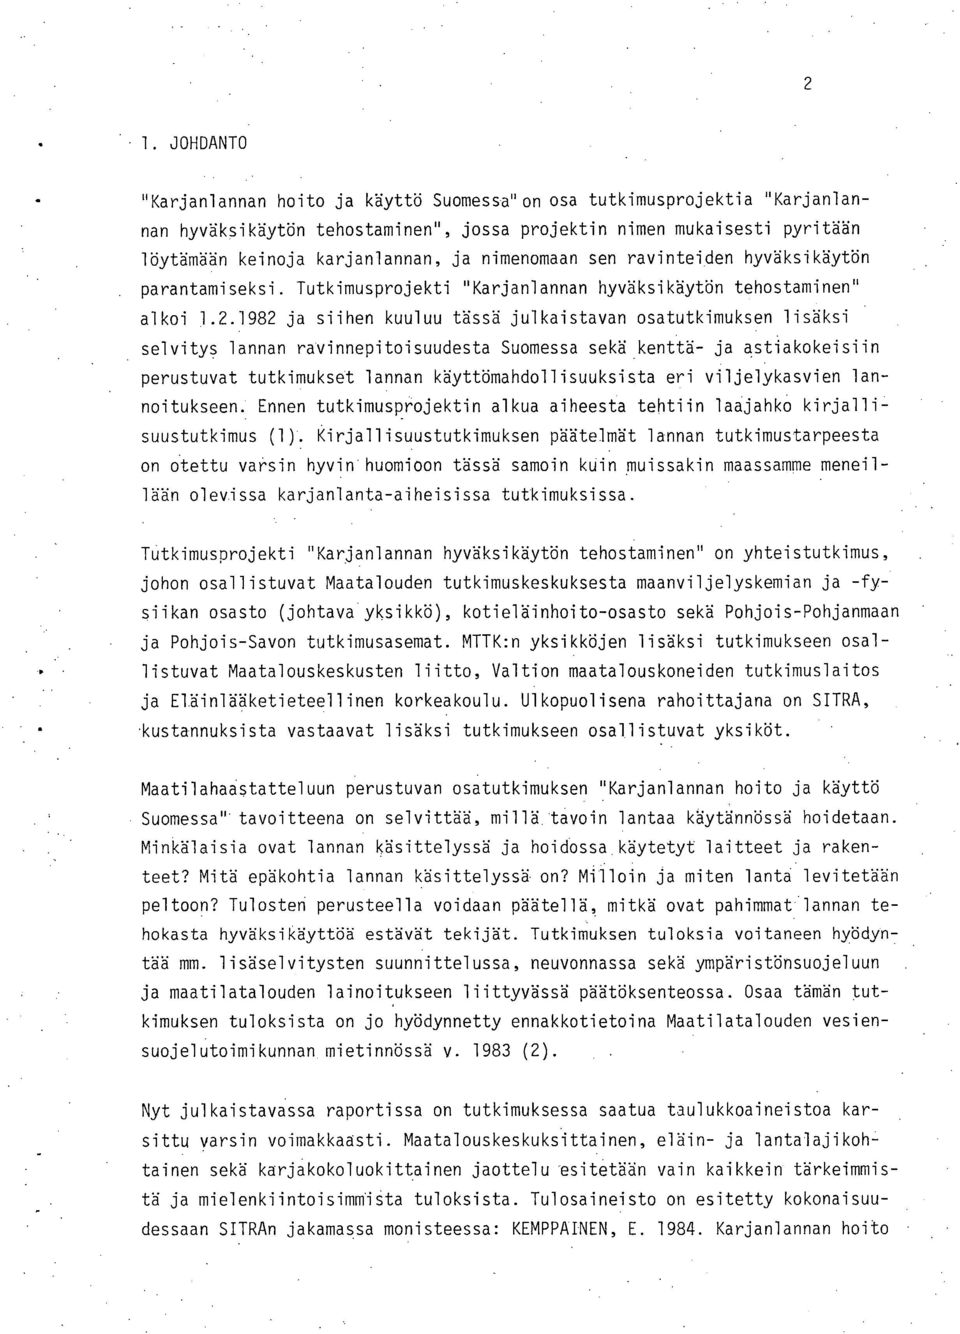 1982 ja siihen kuuluu tässä julkaistavan osatutkimuksen lisäksi selvitys lannan ravinnepitoisuudesta Suomessa sekä kenttä- ja astiakokeisiin perustuvat tutkimukset lannan käyttömahdollisuuksista eri